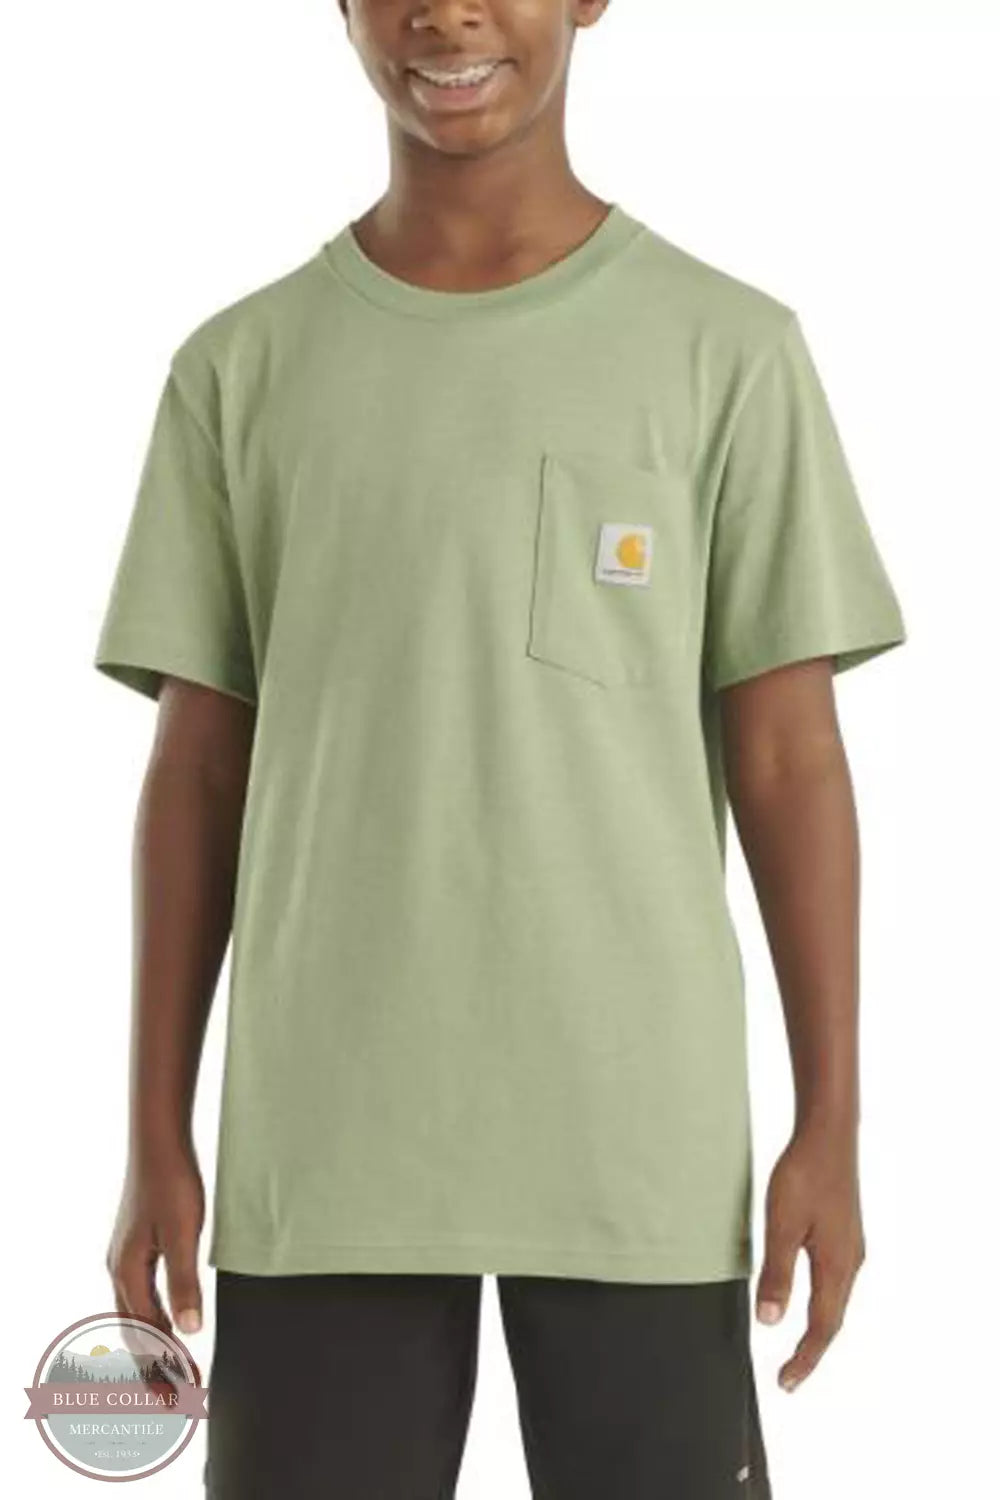 Carhartt CA6523-GF5 Wilderness Short Sleeve T-Shirt Front View